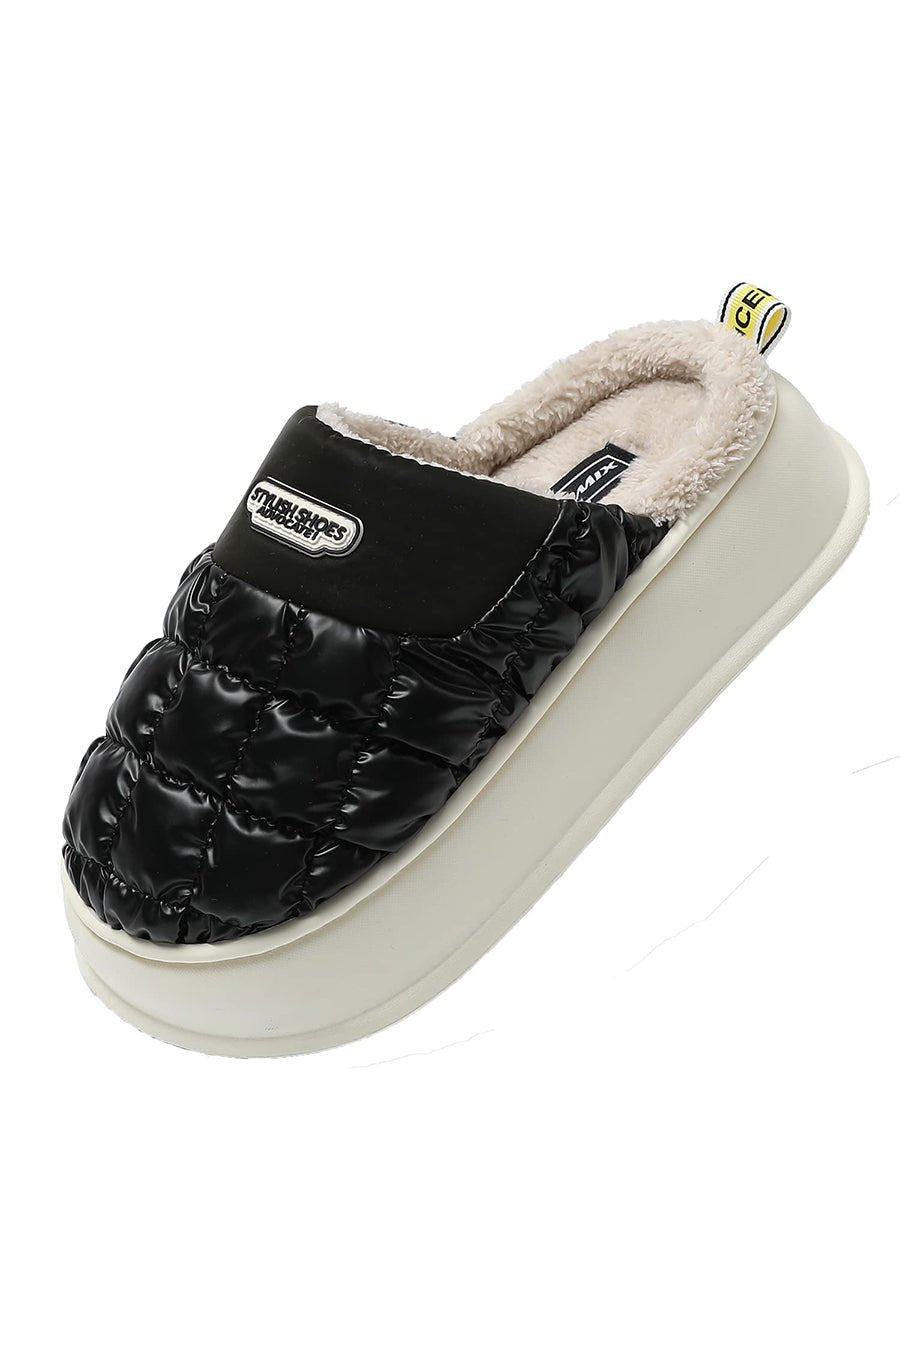 JOMIX Pantofole Donna Invernali Comode Pelose Calde Moda Suola Alta Morbide MD7430